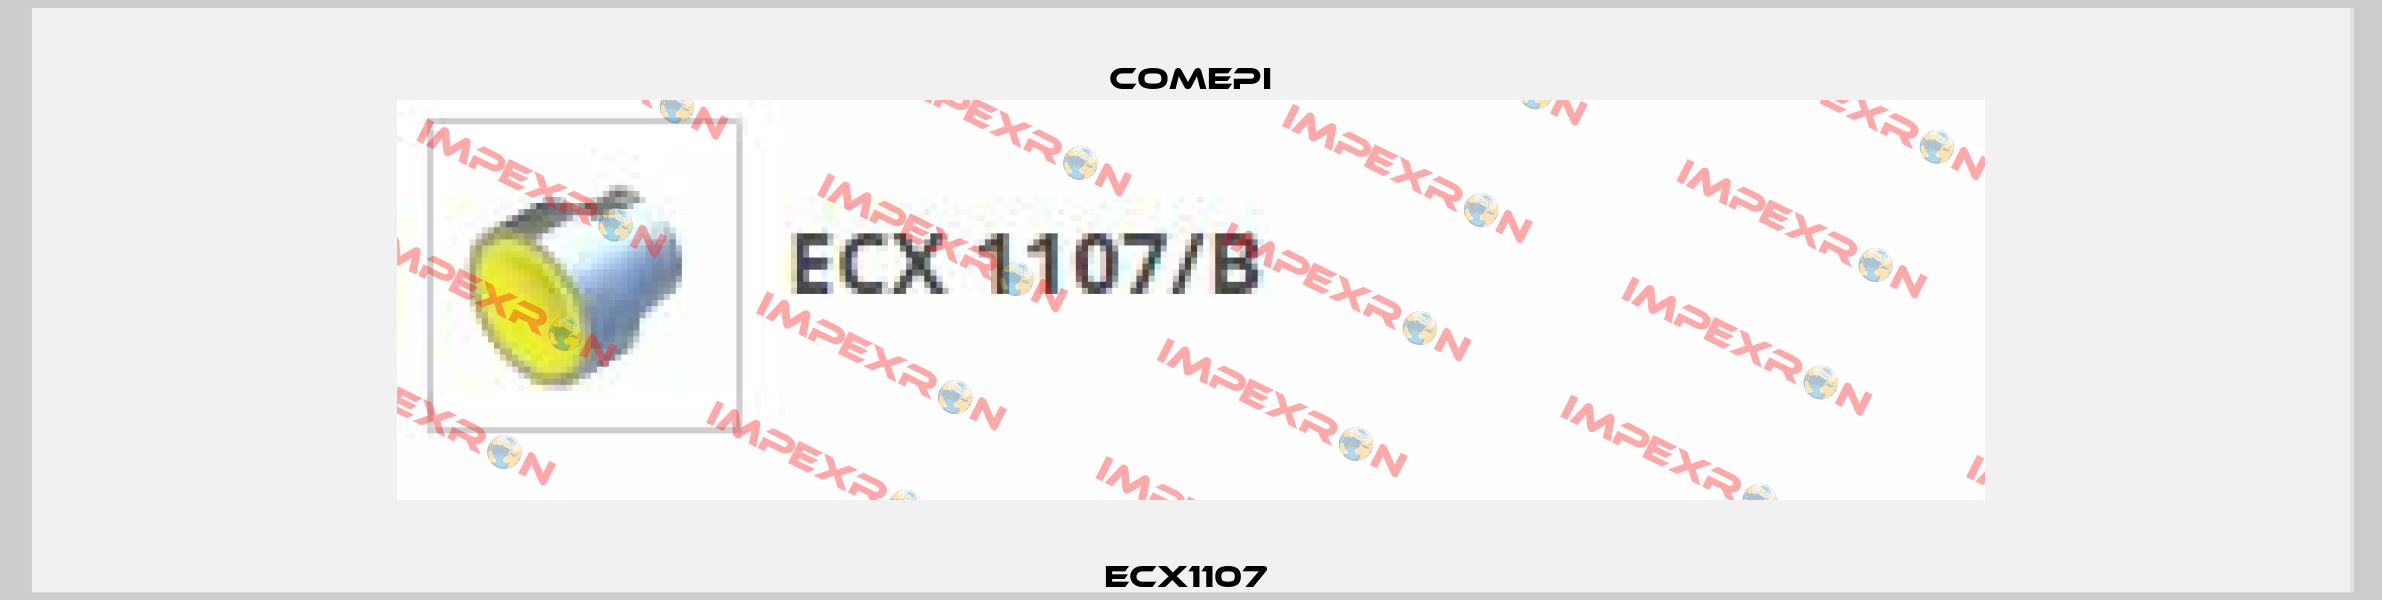 ECX1107  Comepi